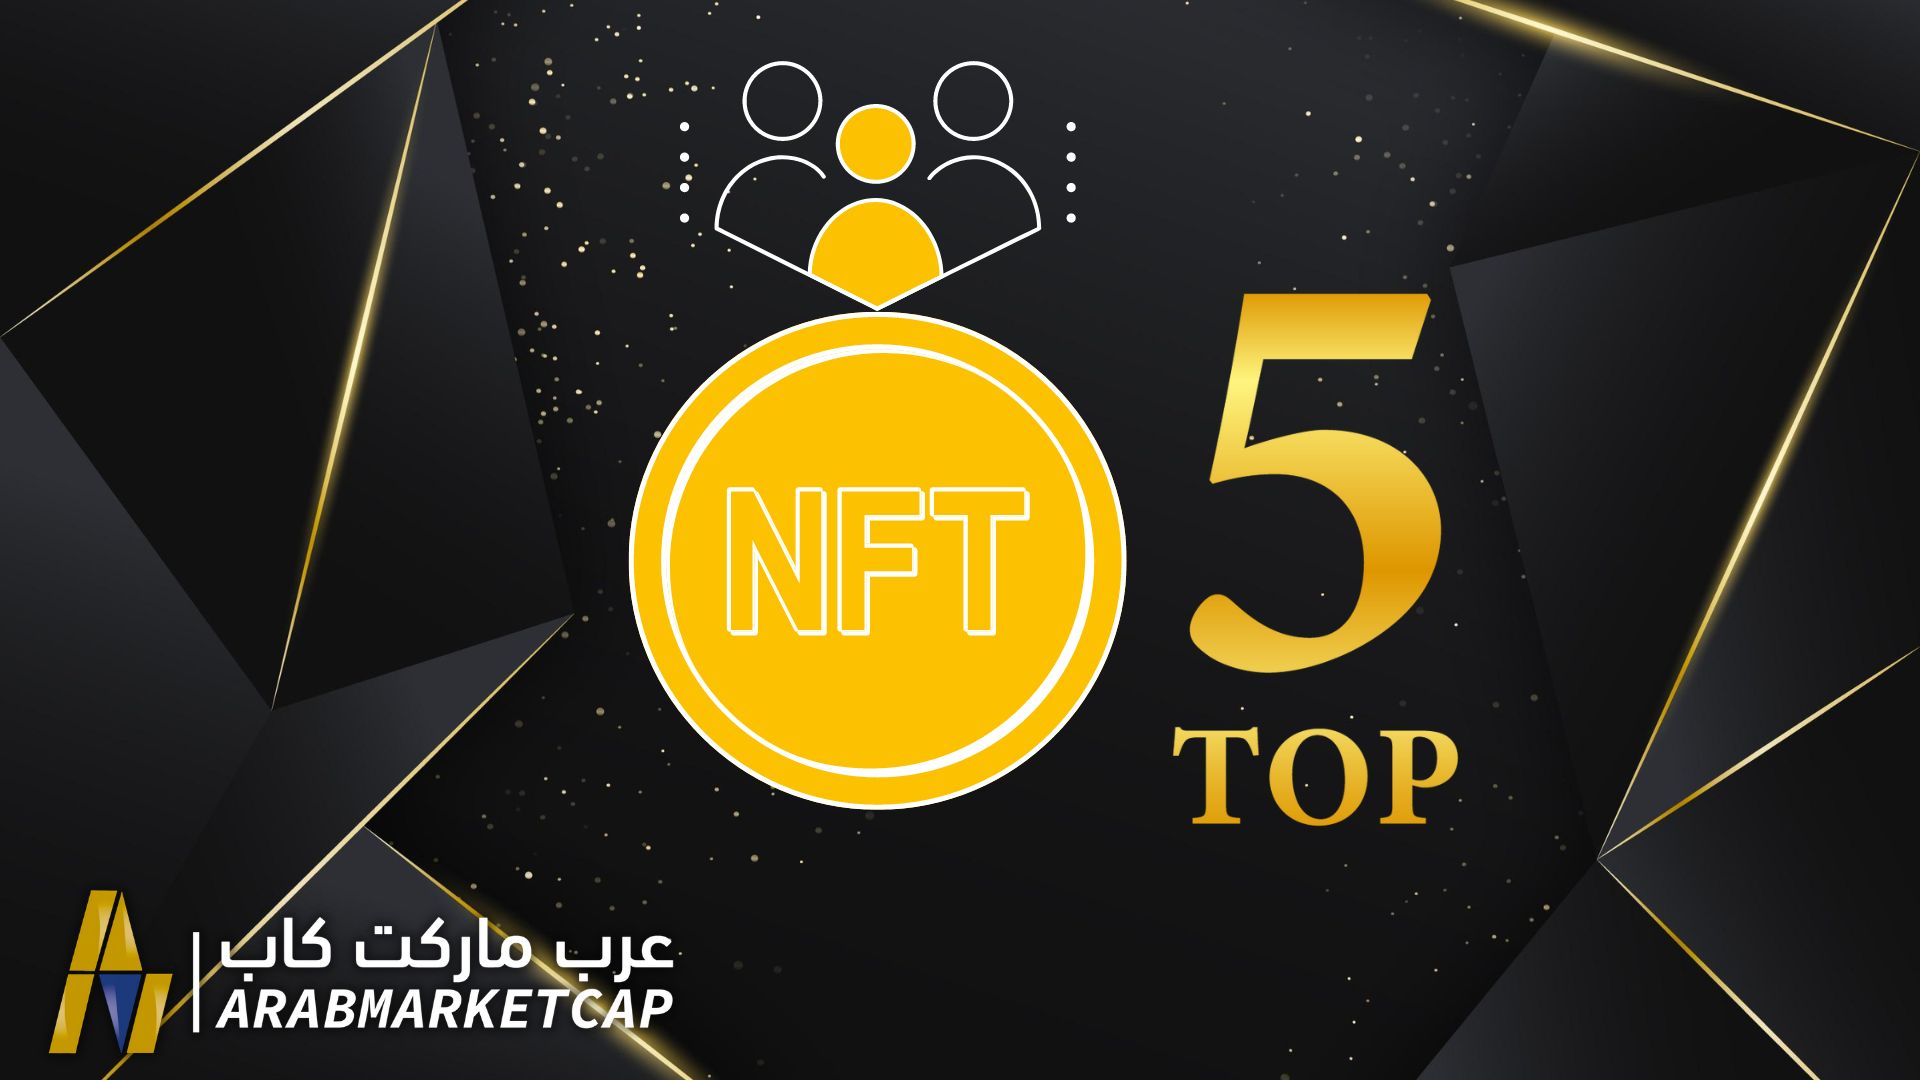 شهدنا جميعاً النمو الهائل الذي شهده سوق الـ NFT في عام 2021، وحتى مع سوق الكريبتو الهبوطي الذي يشهده عالم الكريبتو حالياً، استمرت صناعة الـ NFT بالتقدم. في هذا المقال سنقدم لكم أفضل خمس مشاريع NFT لعام 2022!